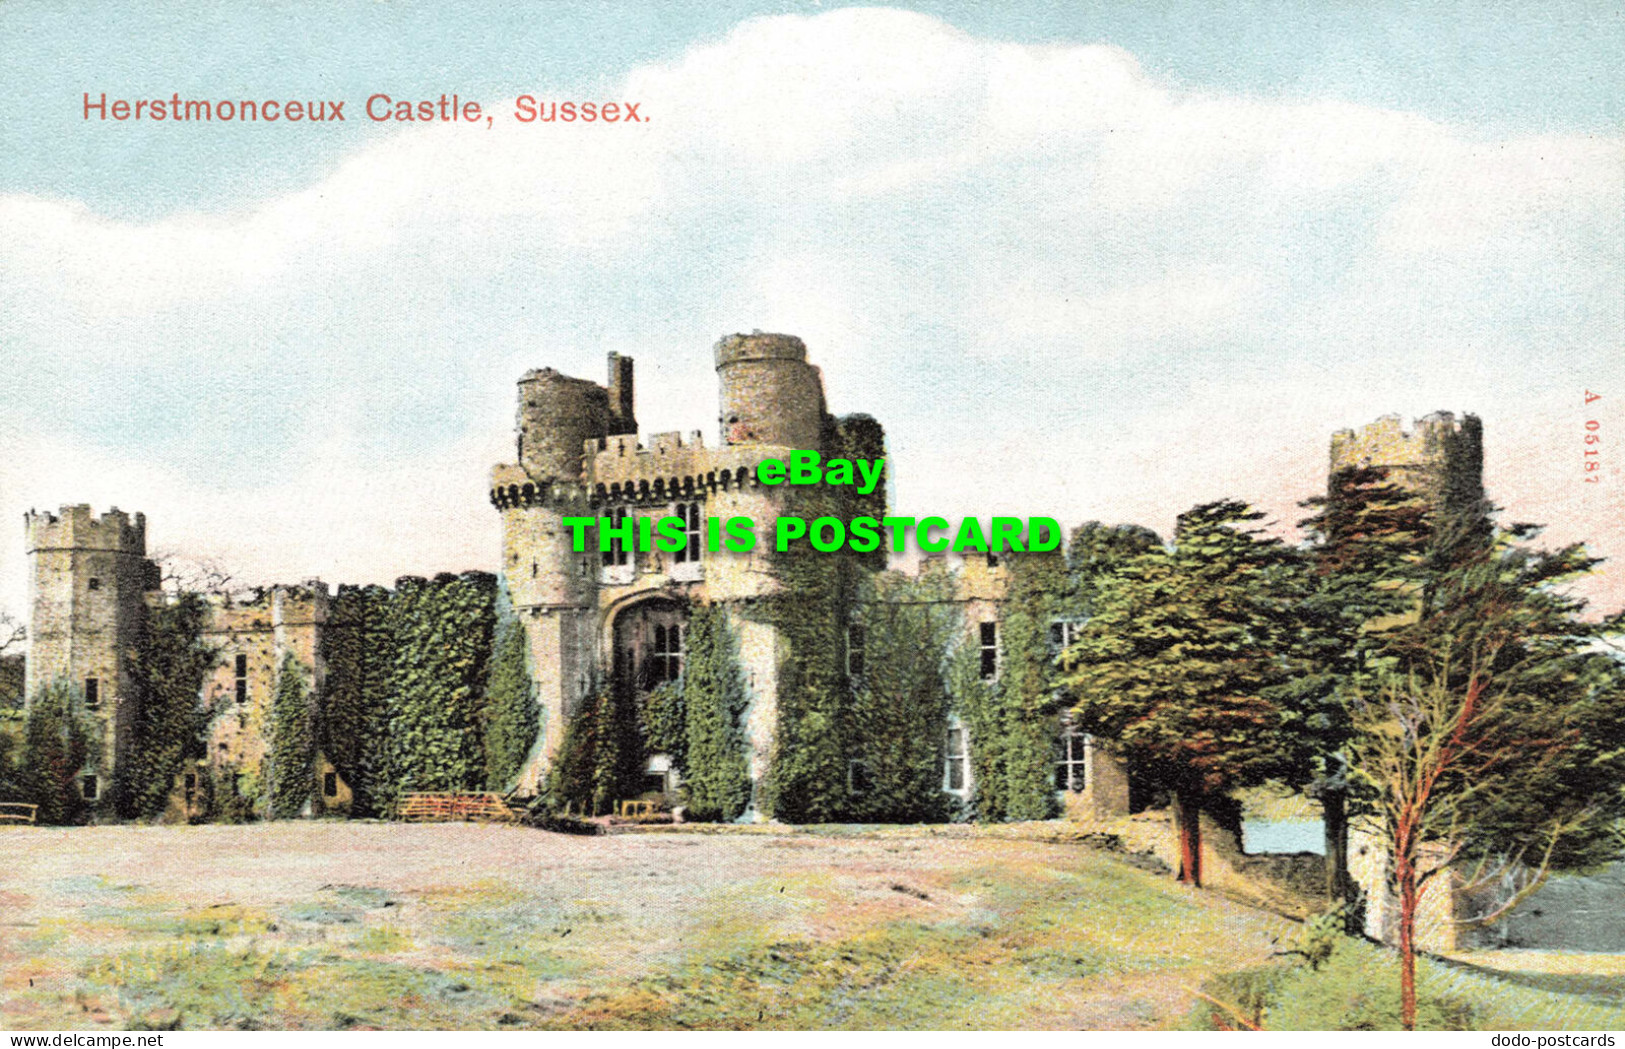 R594246 Sussex. Herstmonceux Castle - World